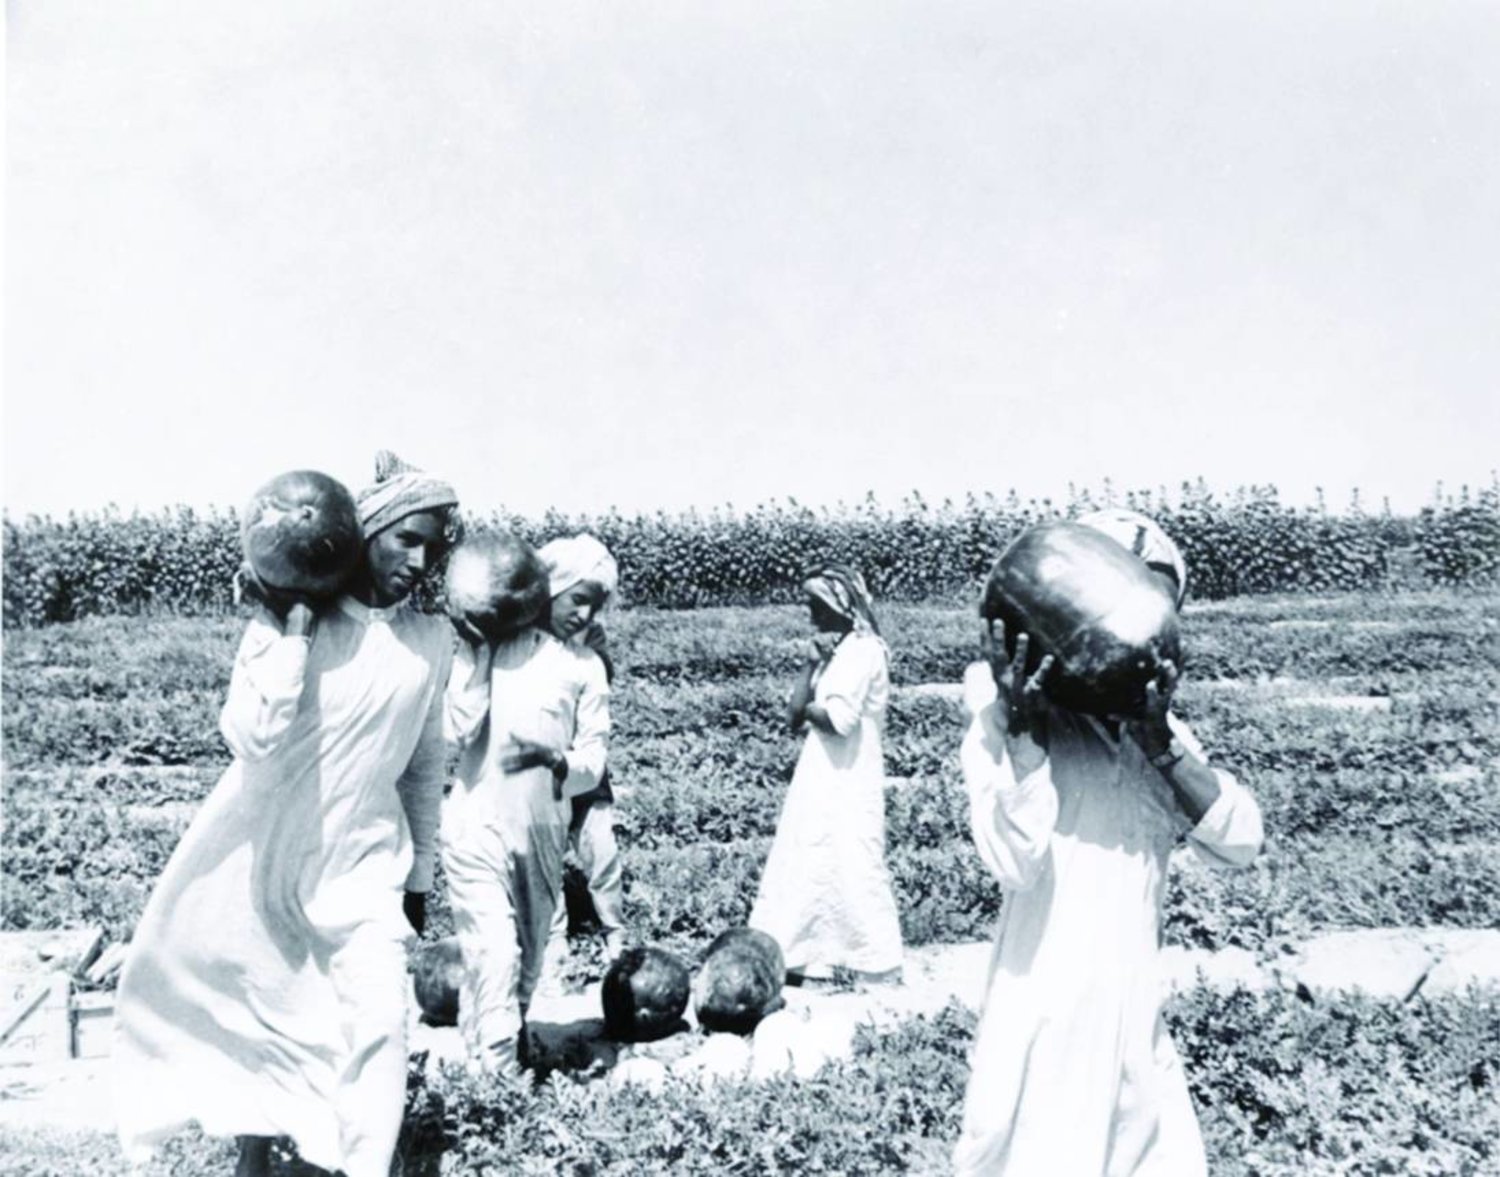 
مجموعة من المزارعين السعوديين يحملون منتوجات إحدى المزارع عام 1950م (دارة الملك عبد العزيز مجموعة جامعة جورج واشنطن)